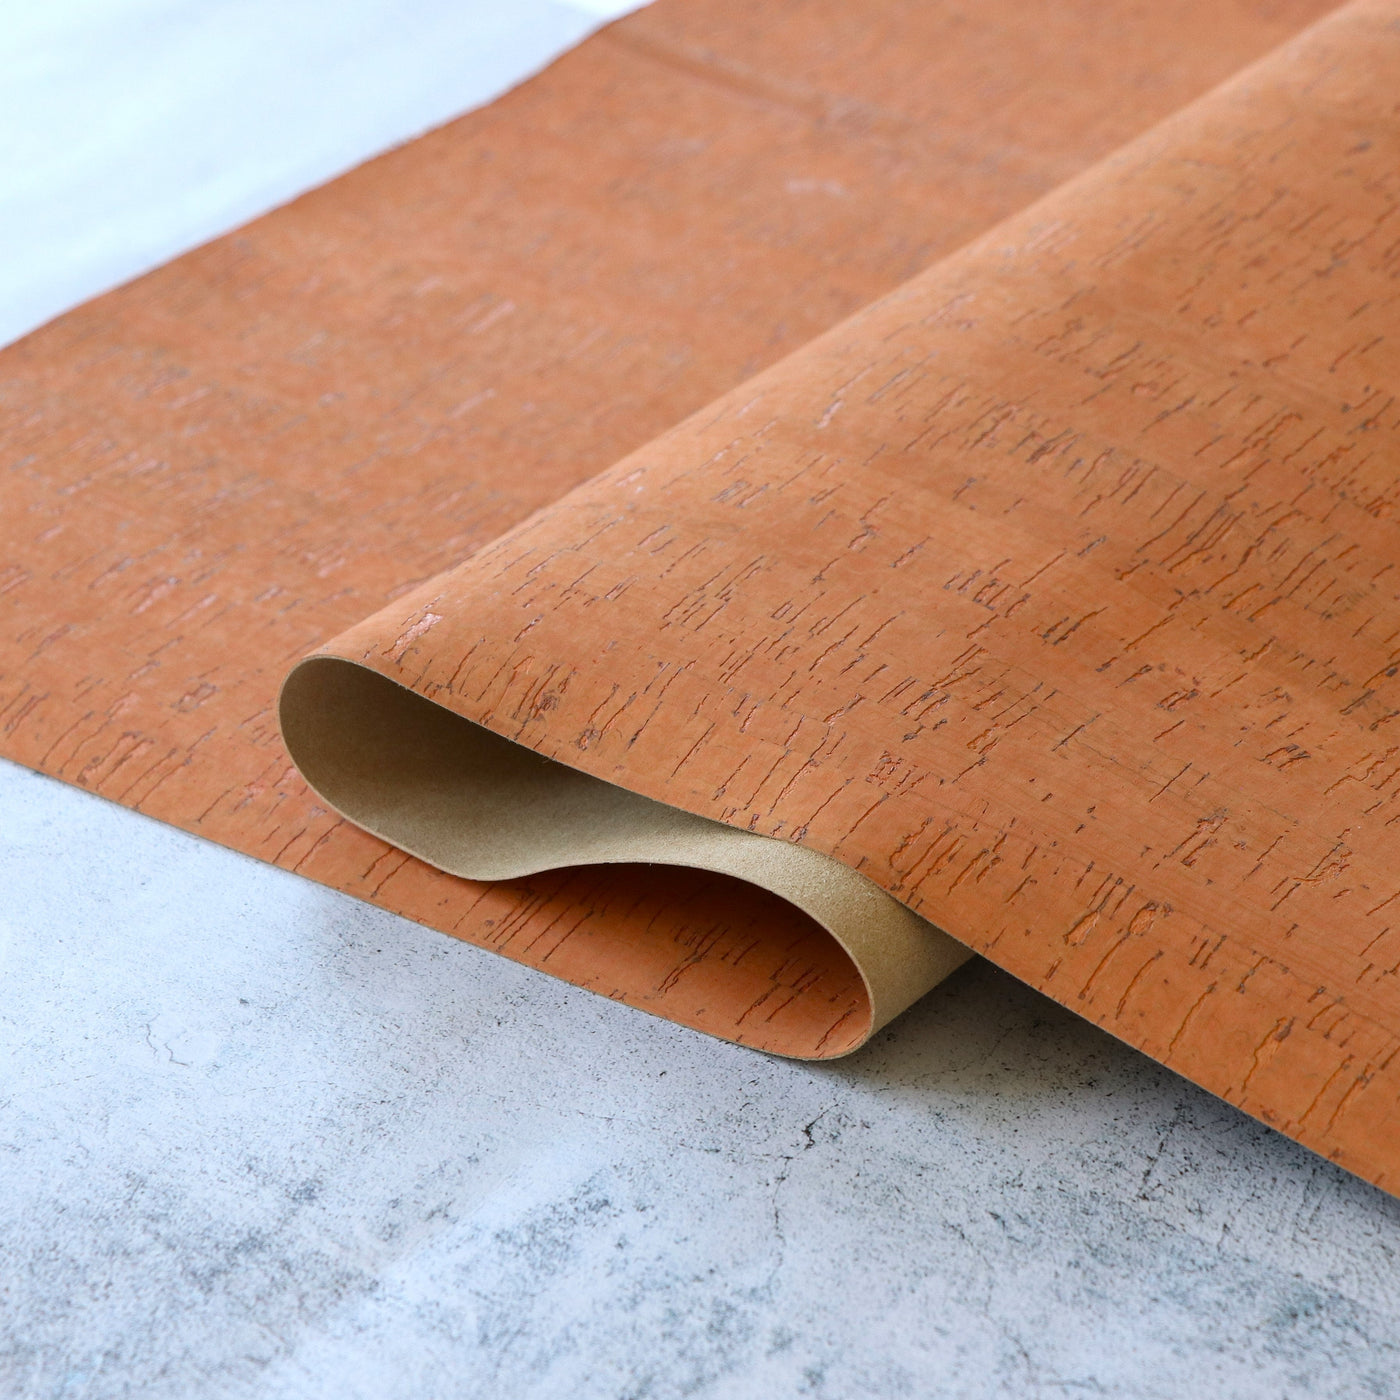 Rustic Sunstone Cork Fabric 12inch Cut